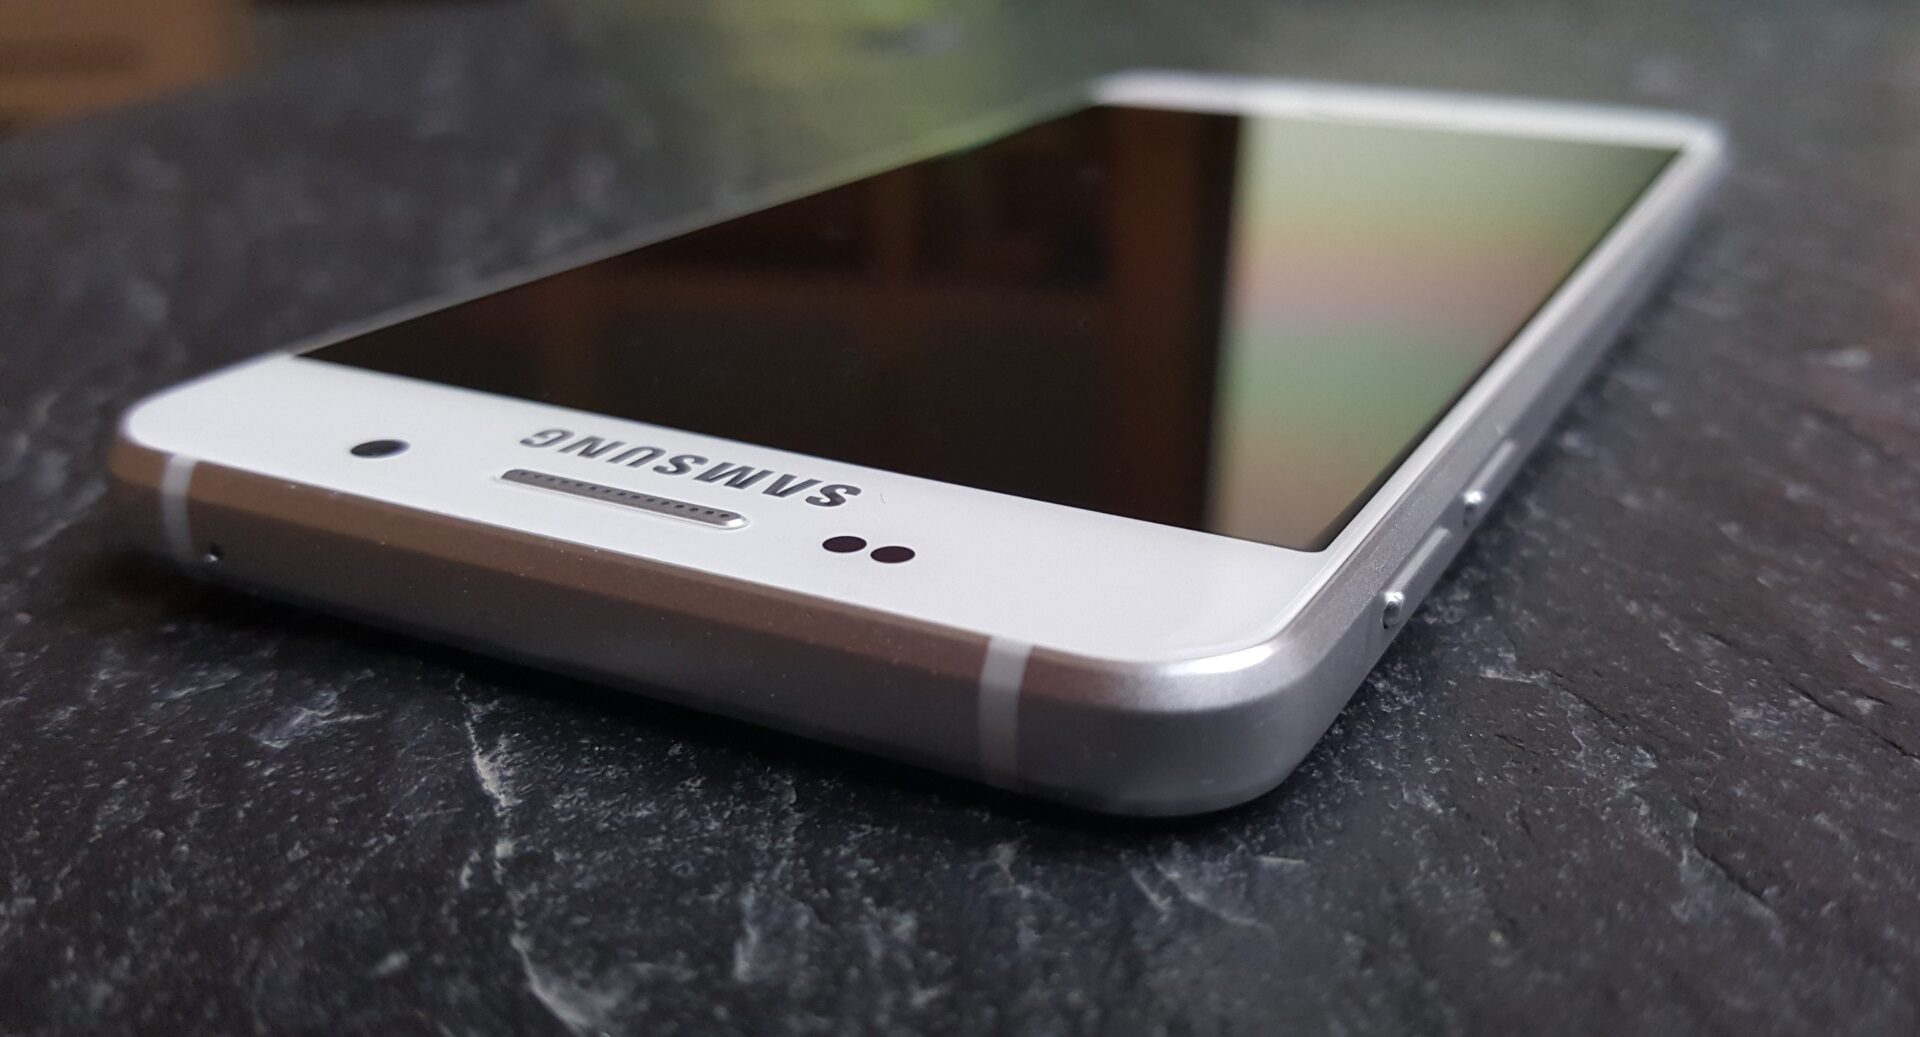 Samsung Galaxy A3 Passes Through the FCC